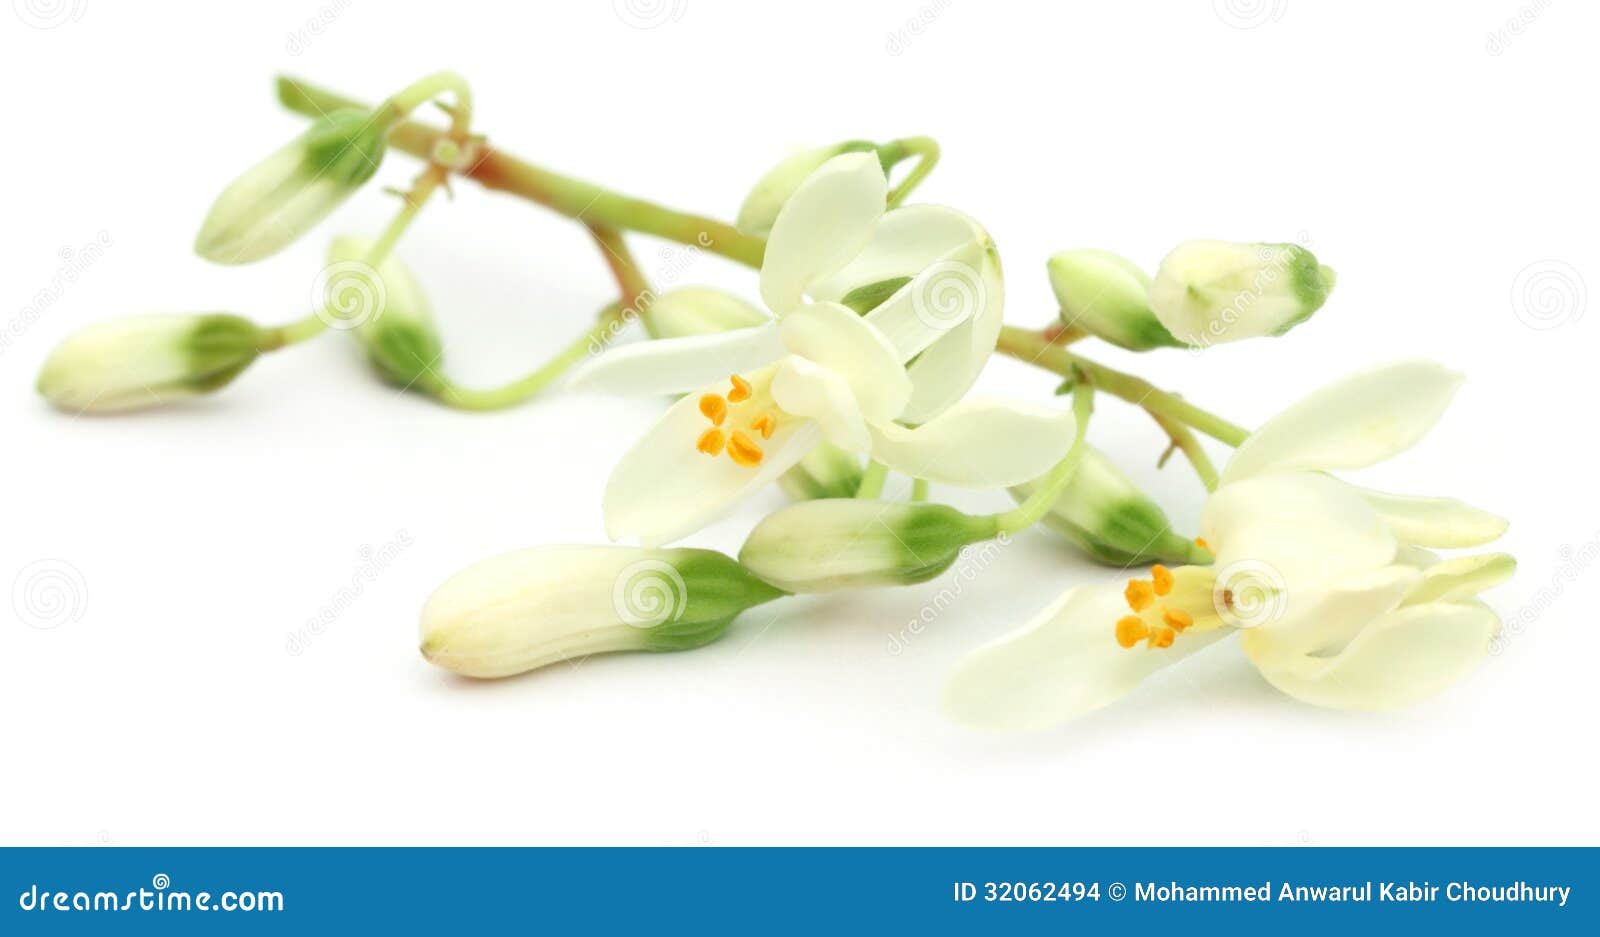 edible moringa flower